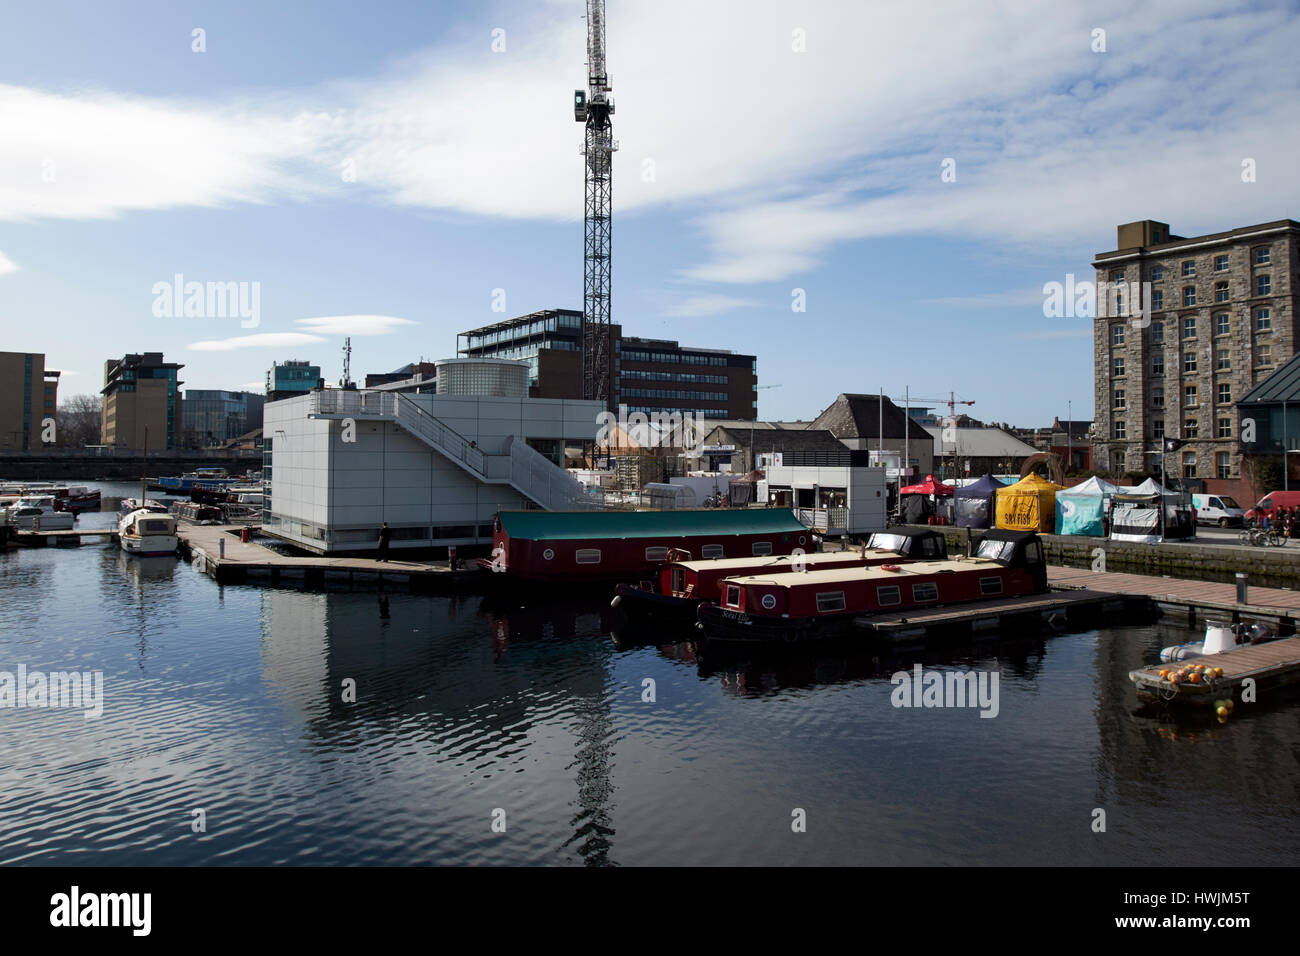 Grand Canal dock Marina und Wasserstraßen Irland Besucherzentrum Dublin Irland Stockfoto